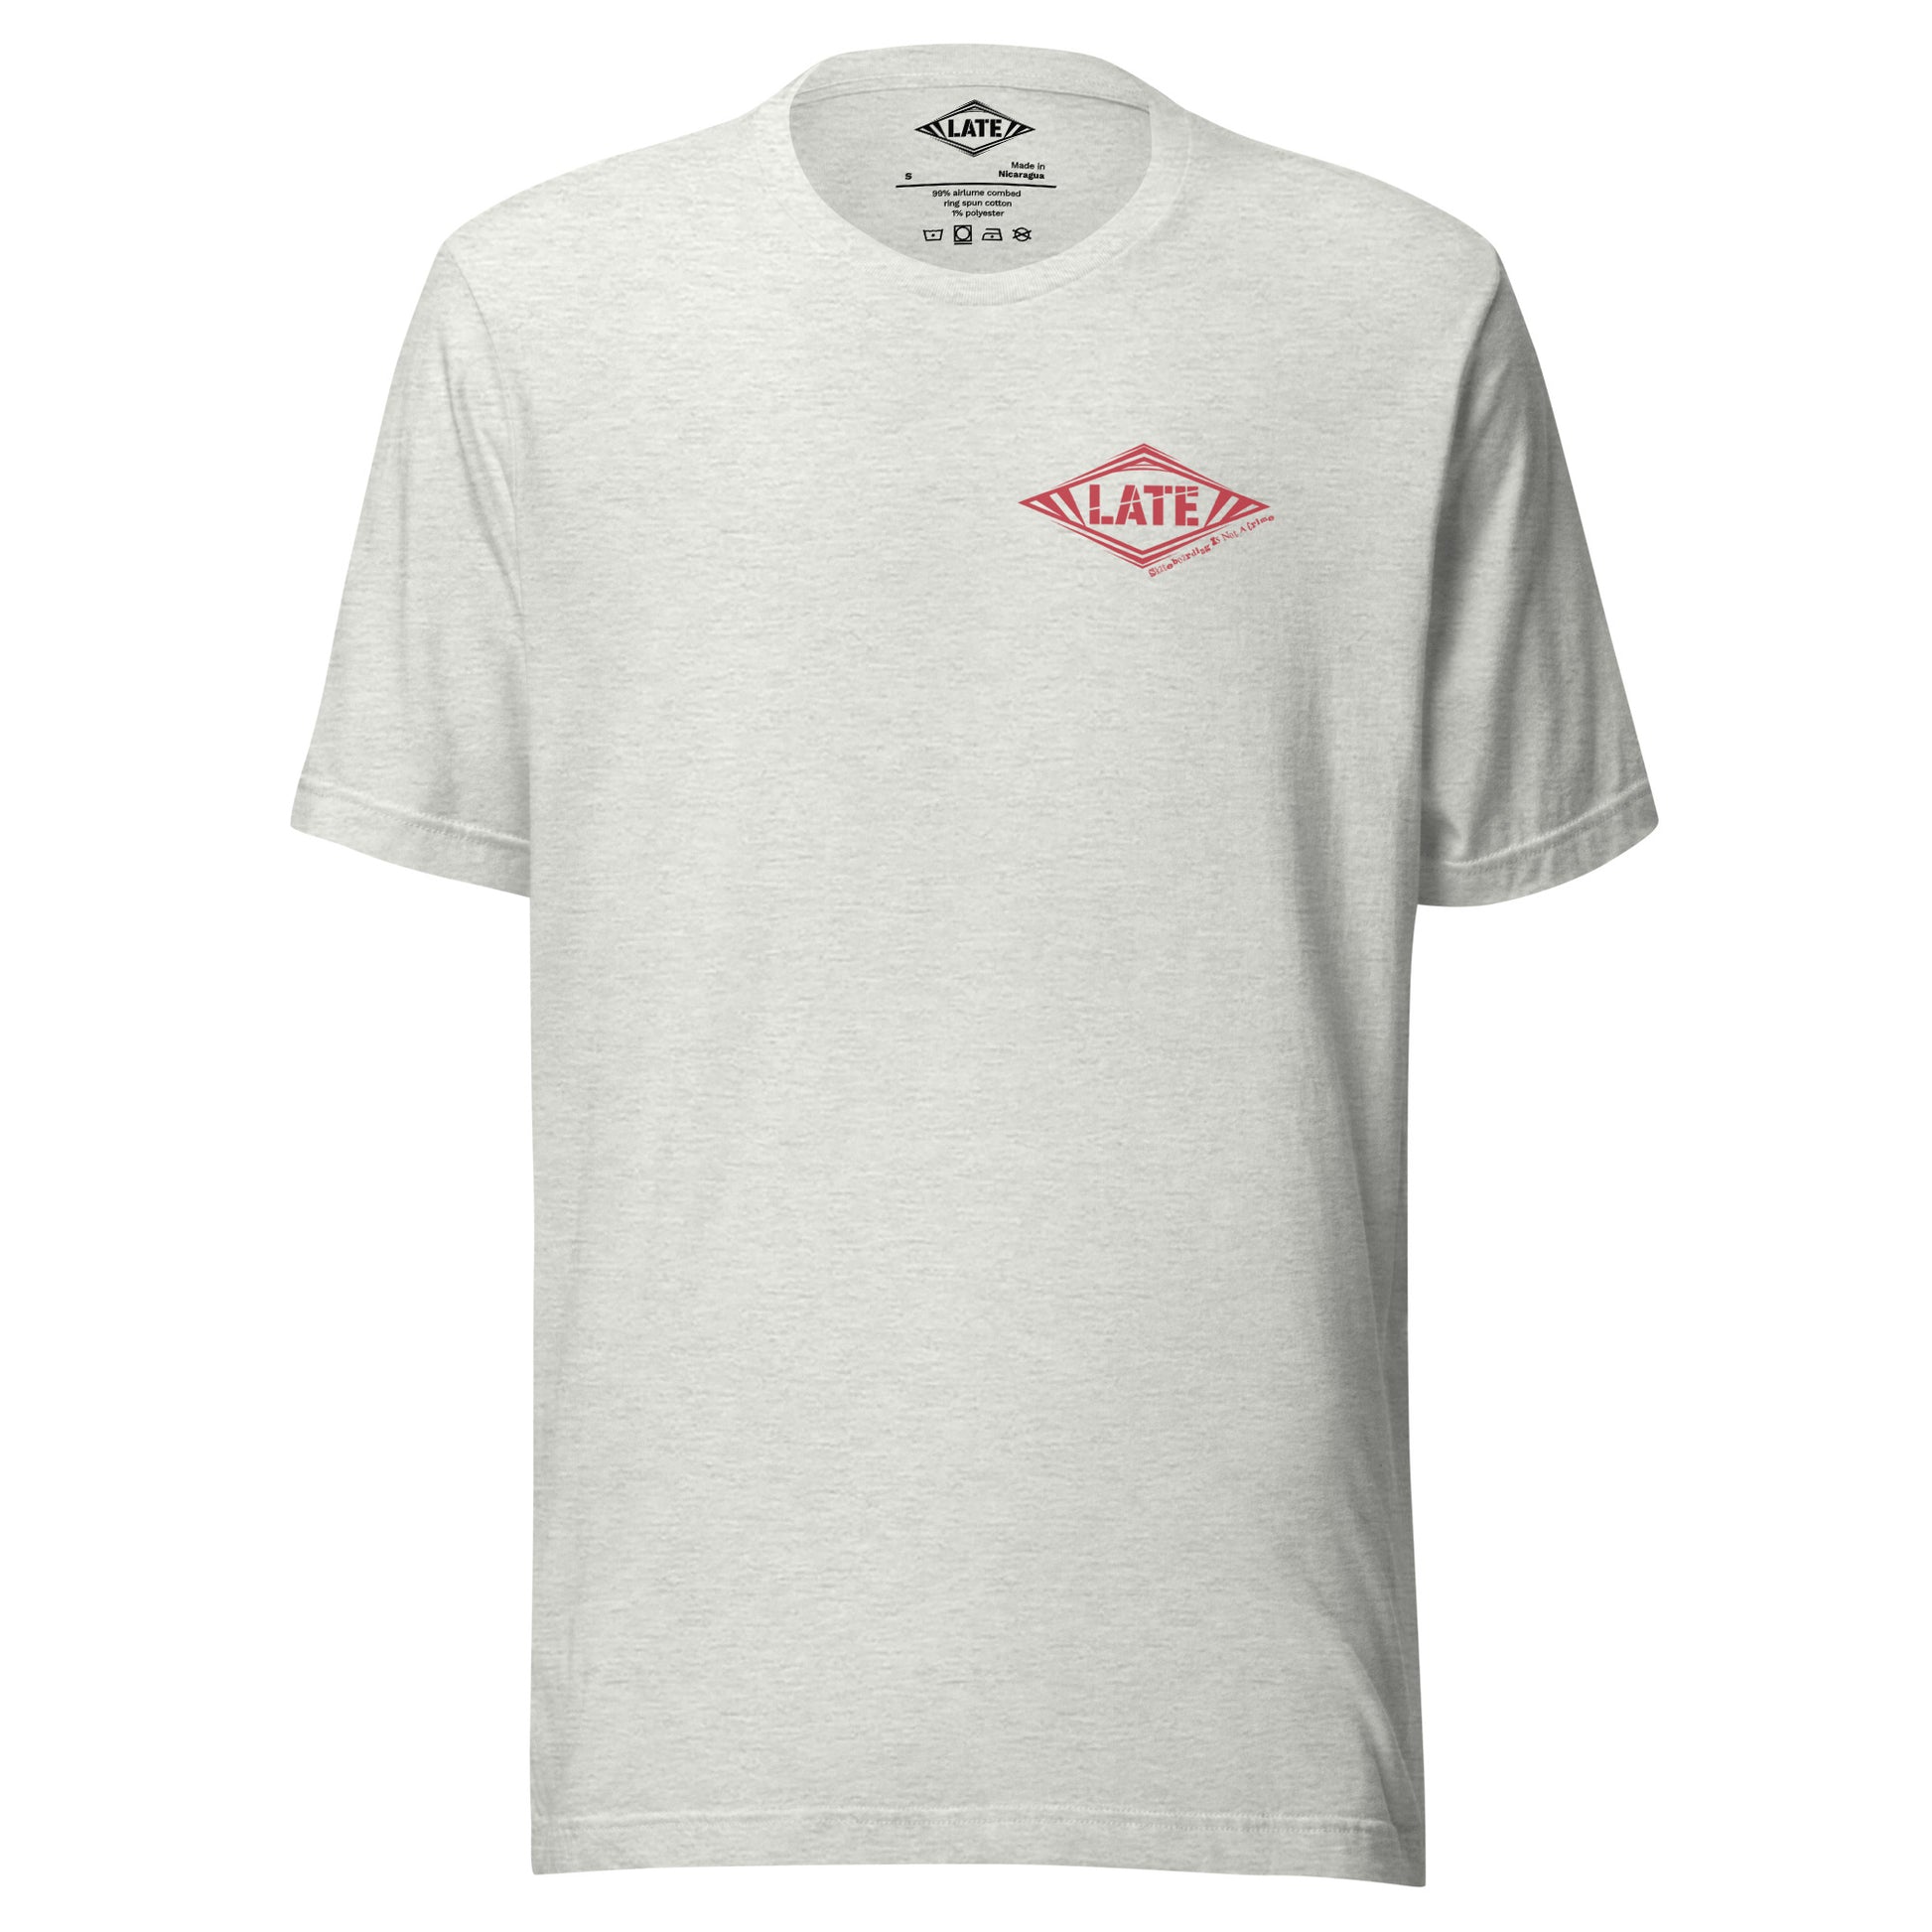 T-Shirt Skateboarding Is Not A Crime unisex Logo marque de vêtement Late Tshirt couleur grisLate